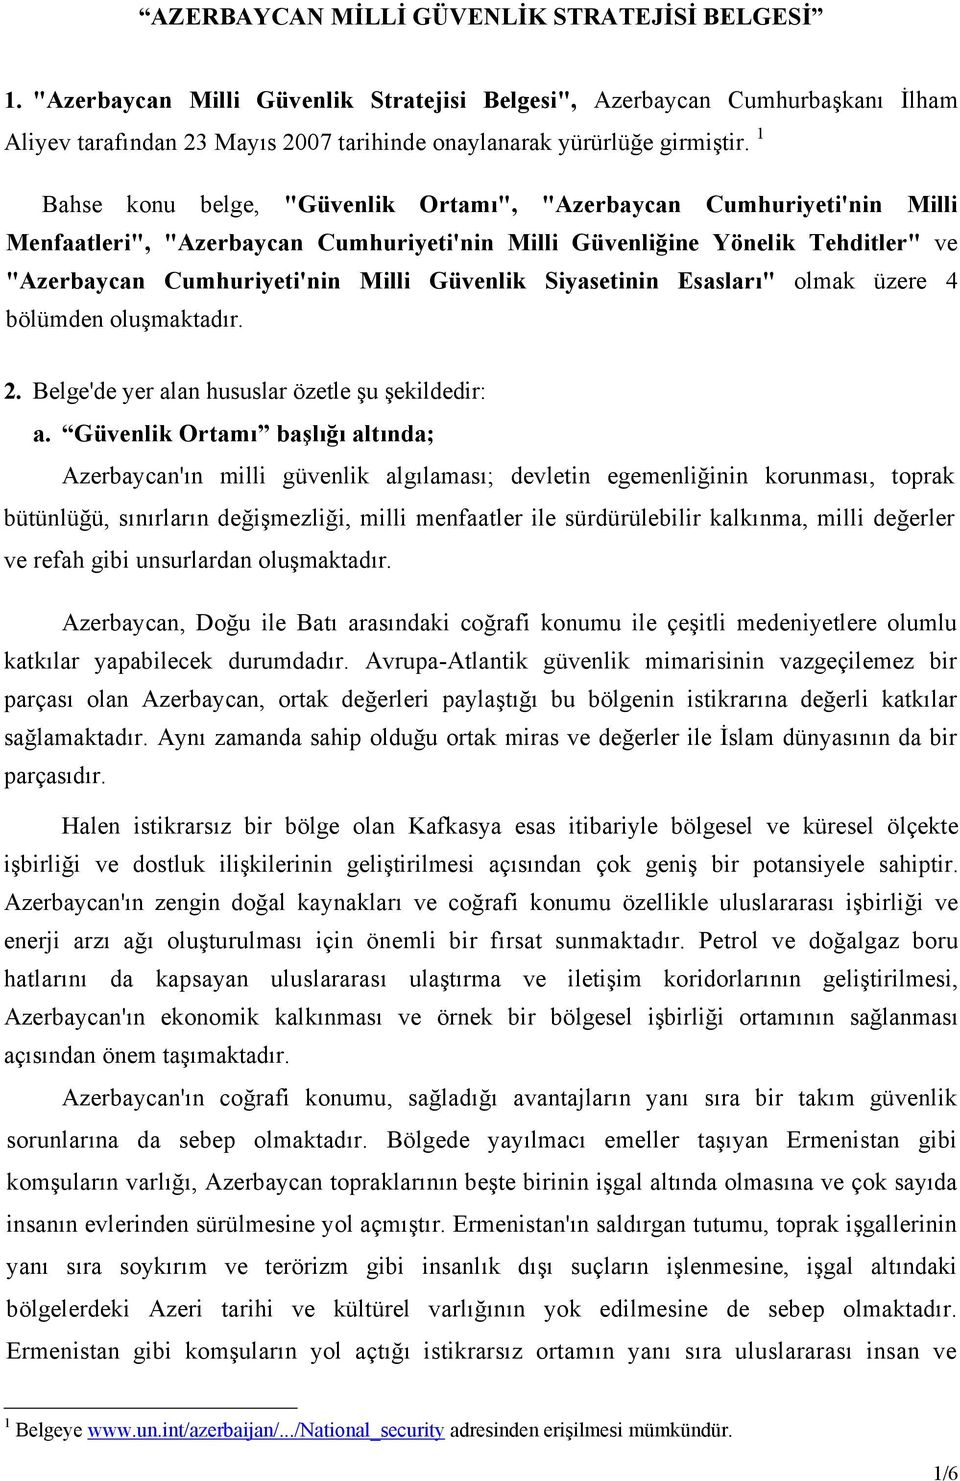 1 Bahse konu belge, "Güvenlik Ortamı", "Azerbaycan Cumhuriyeti'nin Milli Menfaatleri", "Azerbaycan Cumhuriyeti'nin Milli Güvenliğine Yönelik Tehditler" ve "Azerbaycan Cumhuriyeti'nin Milli Güvenlik